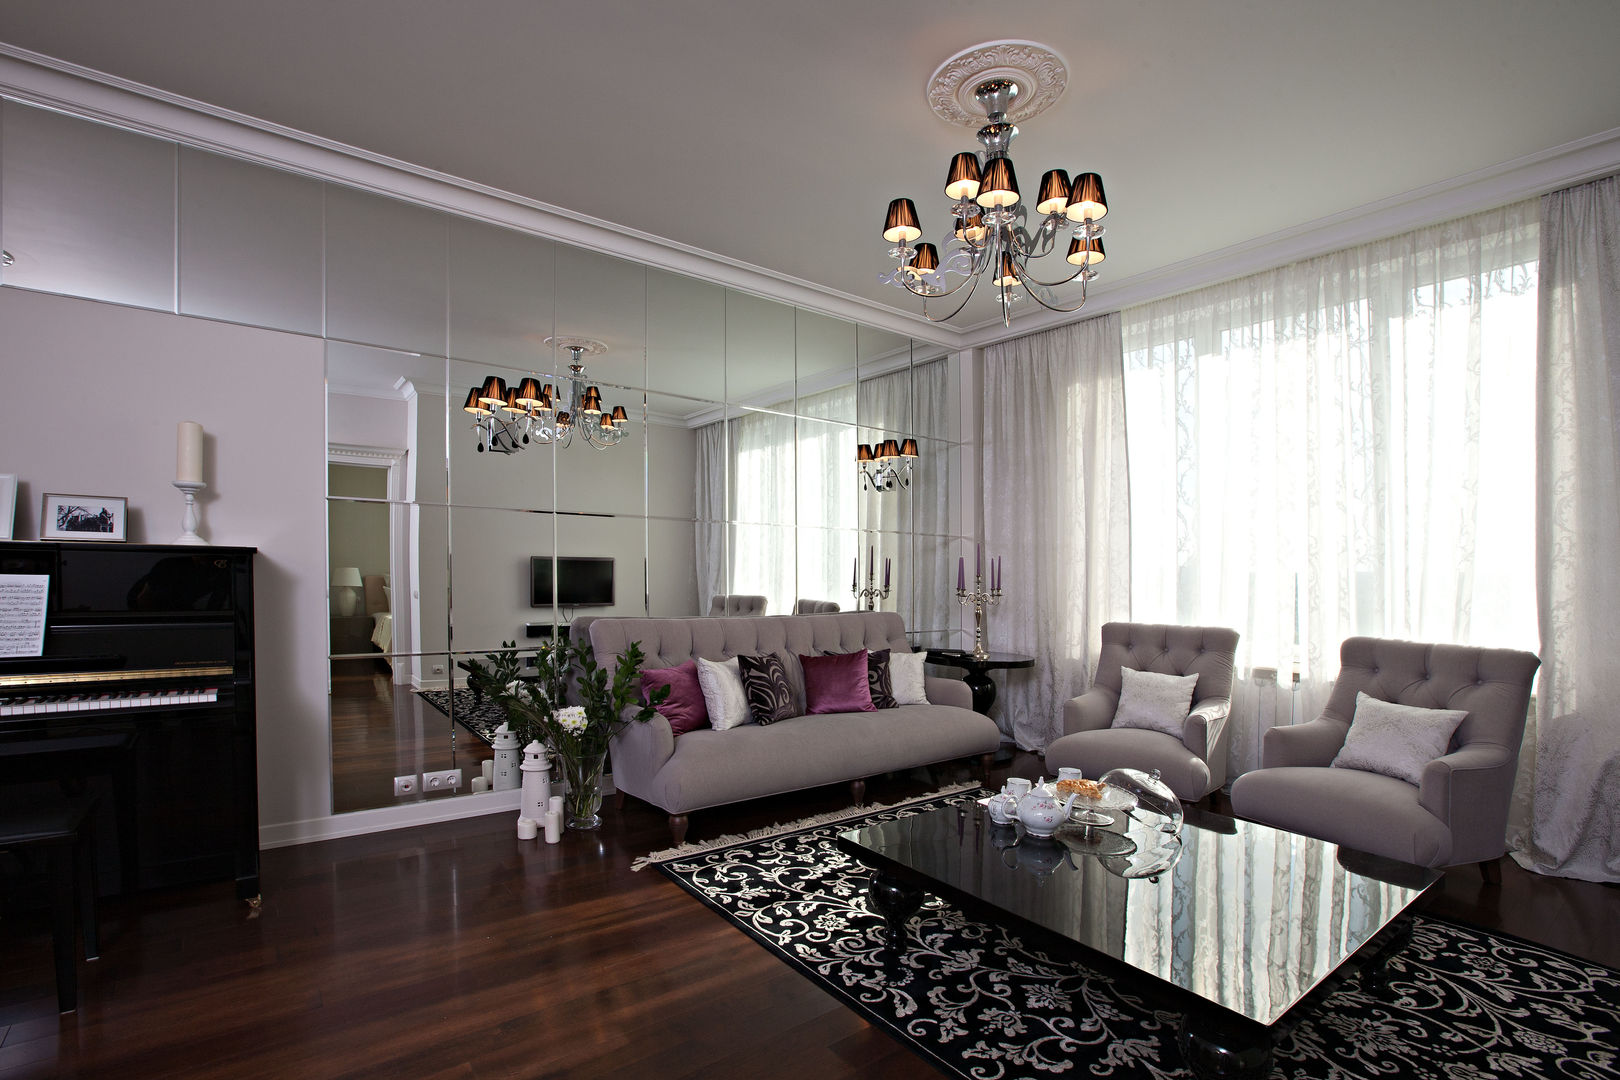 гостиная Инна Азорская Гостиная в классическом стиле красивый интерьер,стильная гостиная,гостиная,у ТВ